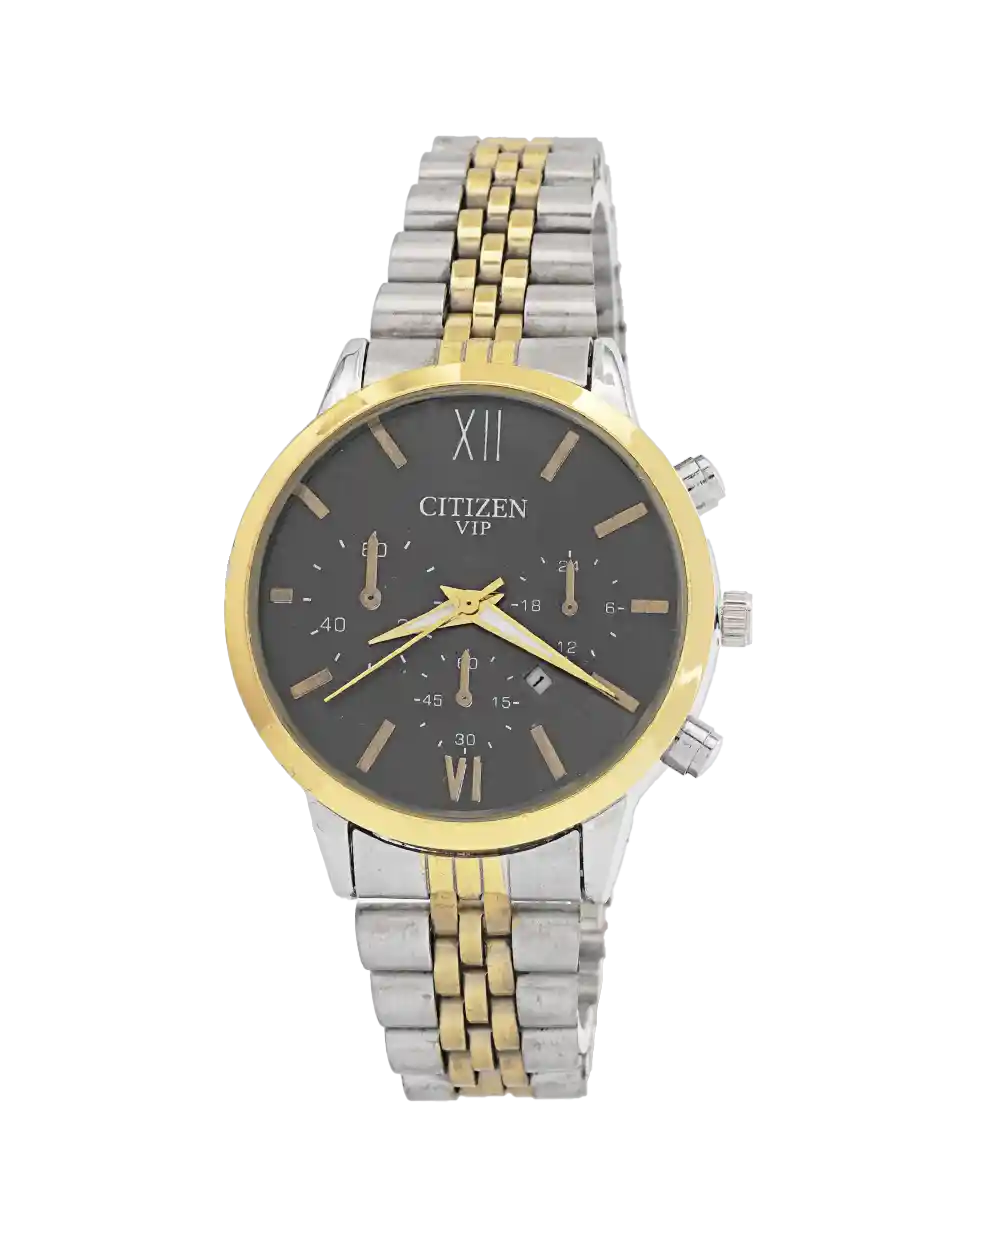 خرید ساعت مچی زنانه سیتیزن CITIZEN مدل 1991 بند استیل نقره ای طلایی رنگ ثابت و صفحه مشکی بهترین قیمت به همراه ارسال رایگان و جعبه